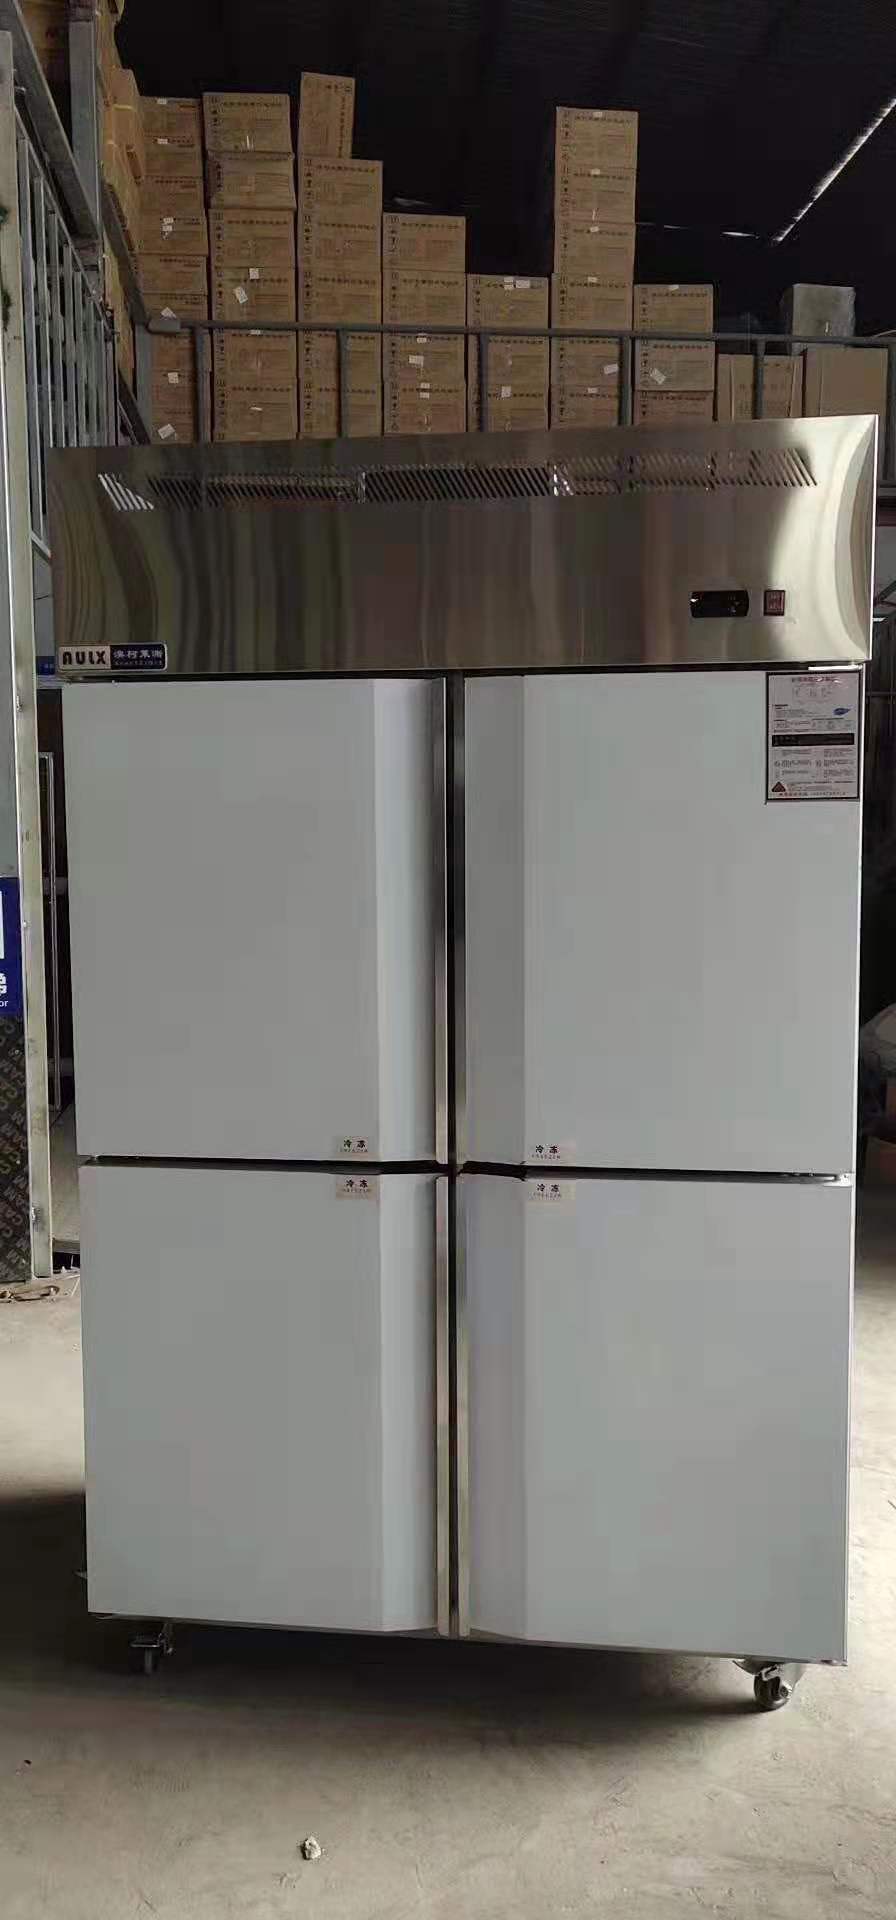 速冻柜 冰箱 速冻冰箱 冰箱速冻柜 冷柜图片